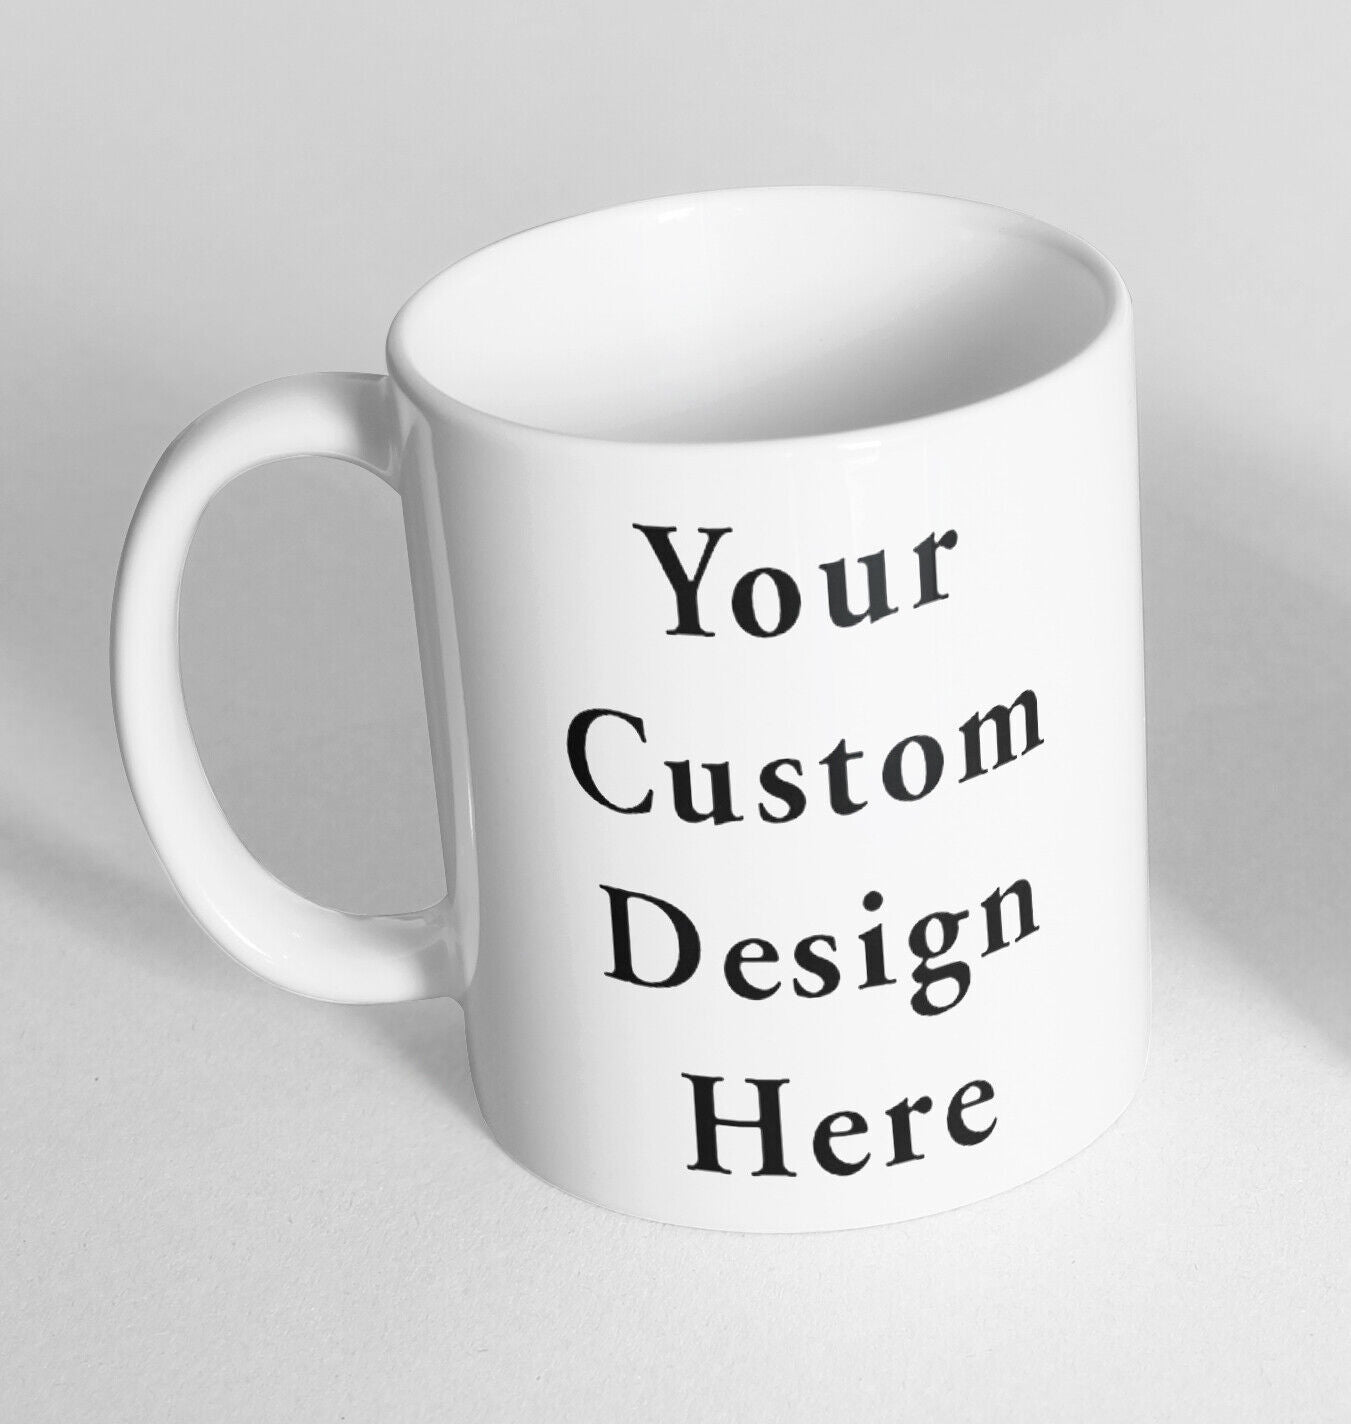 Funny Novelty Ceramic Printed Mug Thermal Mug Gift Coffee Tea 11